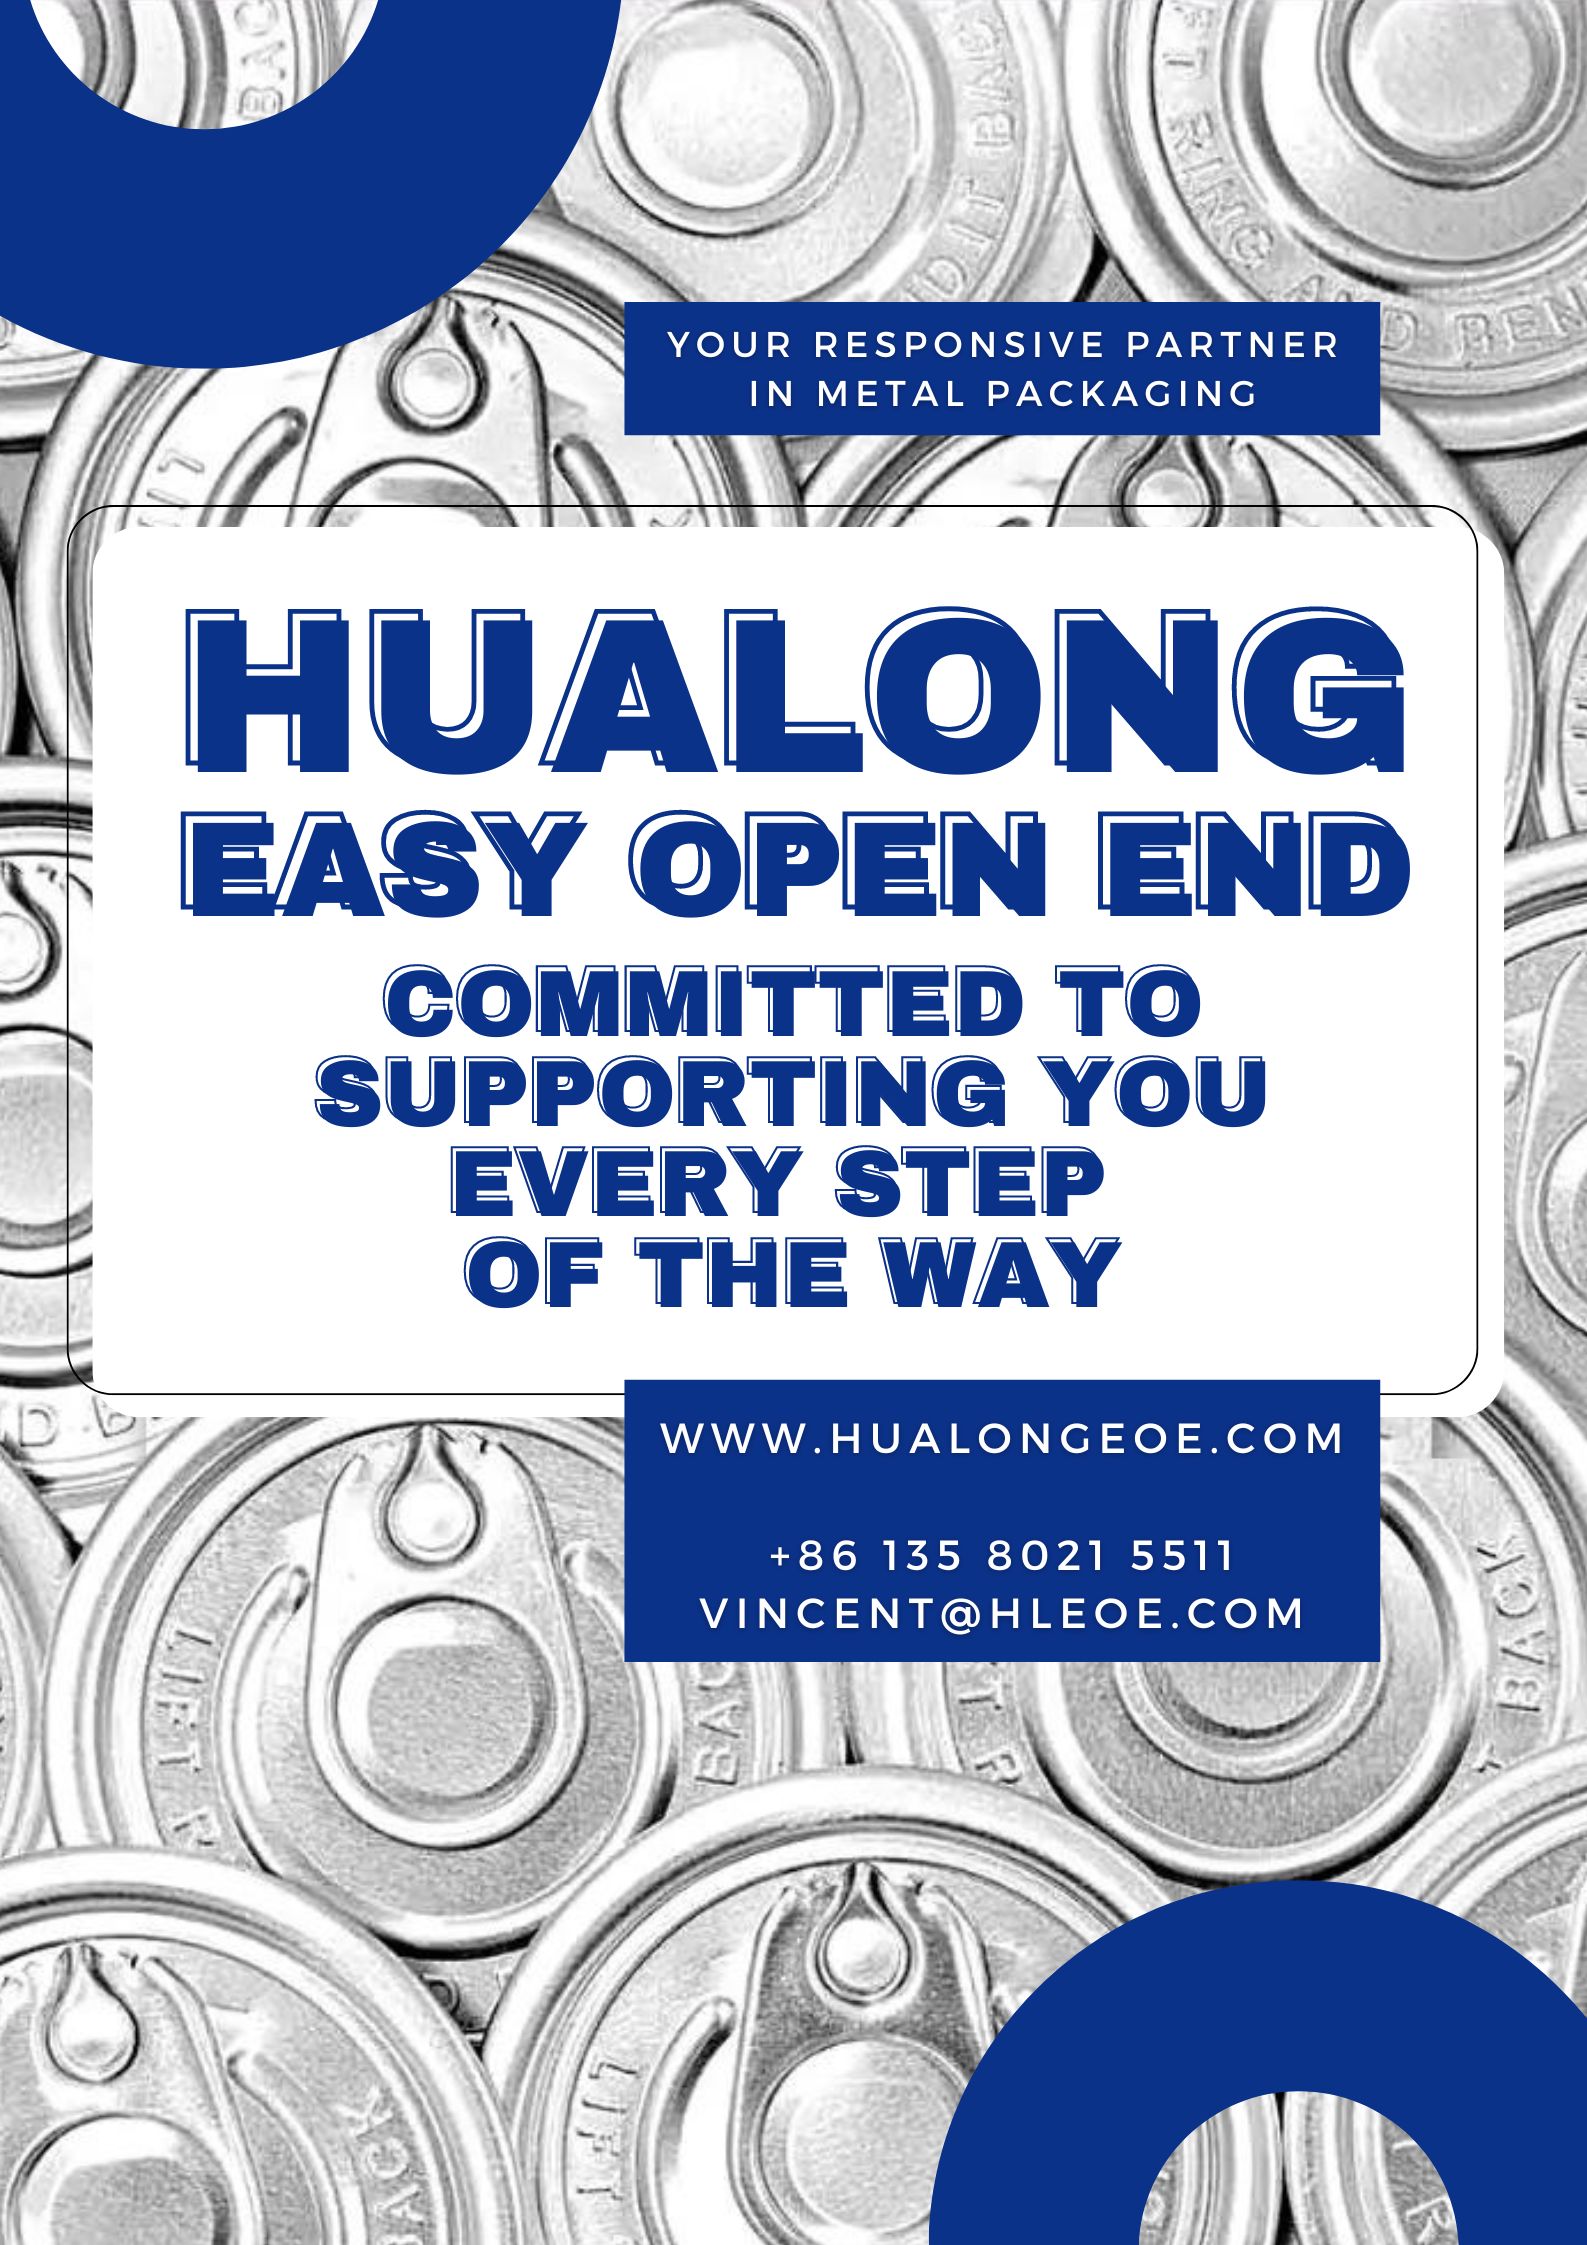 Hualong EOE येथे अपवादात्मक ग्राहक सेवा: तुमच्या खरेदीपूर्वी आणि नंतर